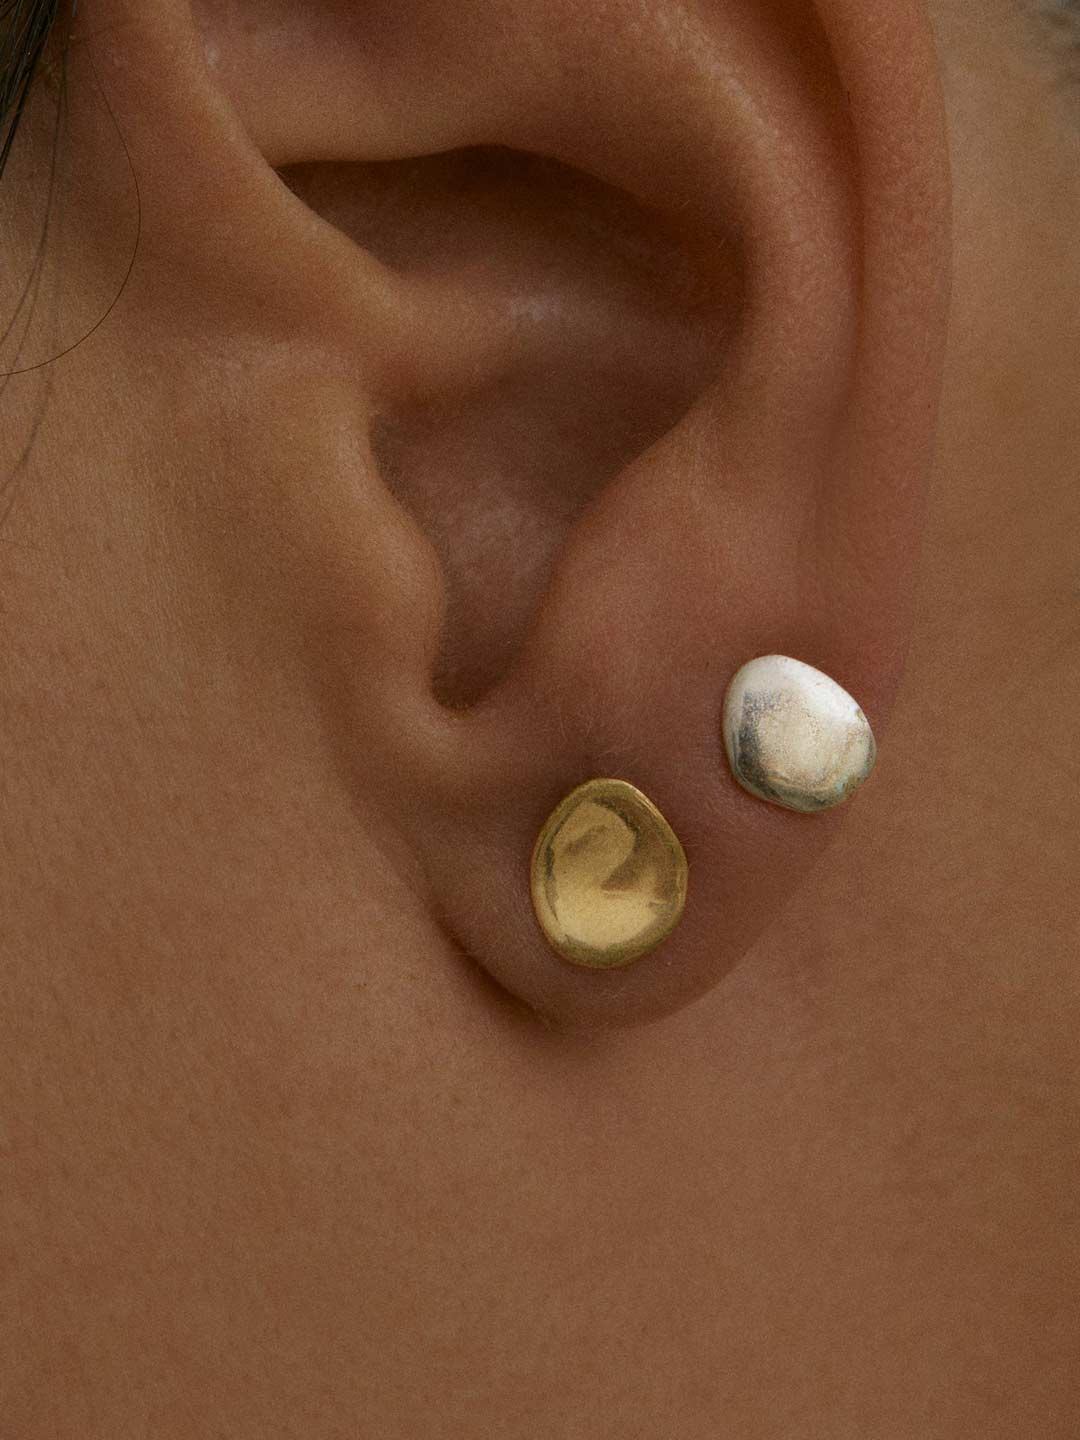 Piedra Pierced Earring - Silver